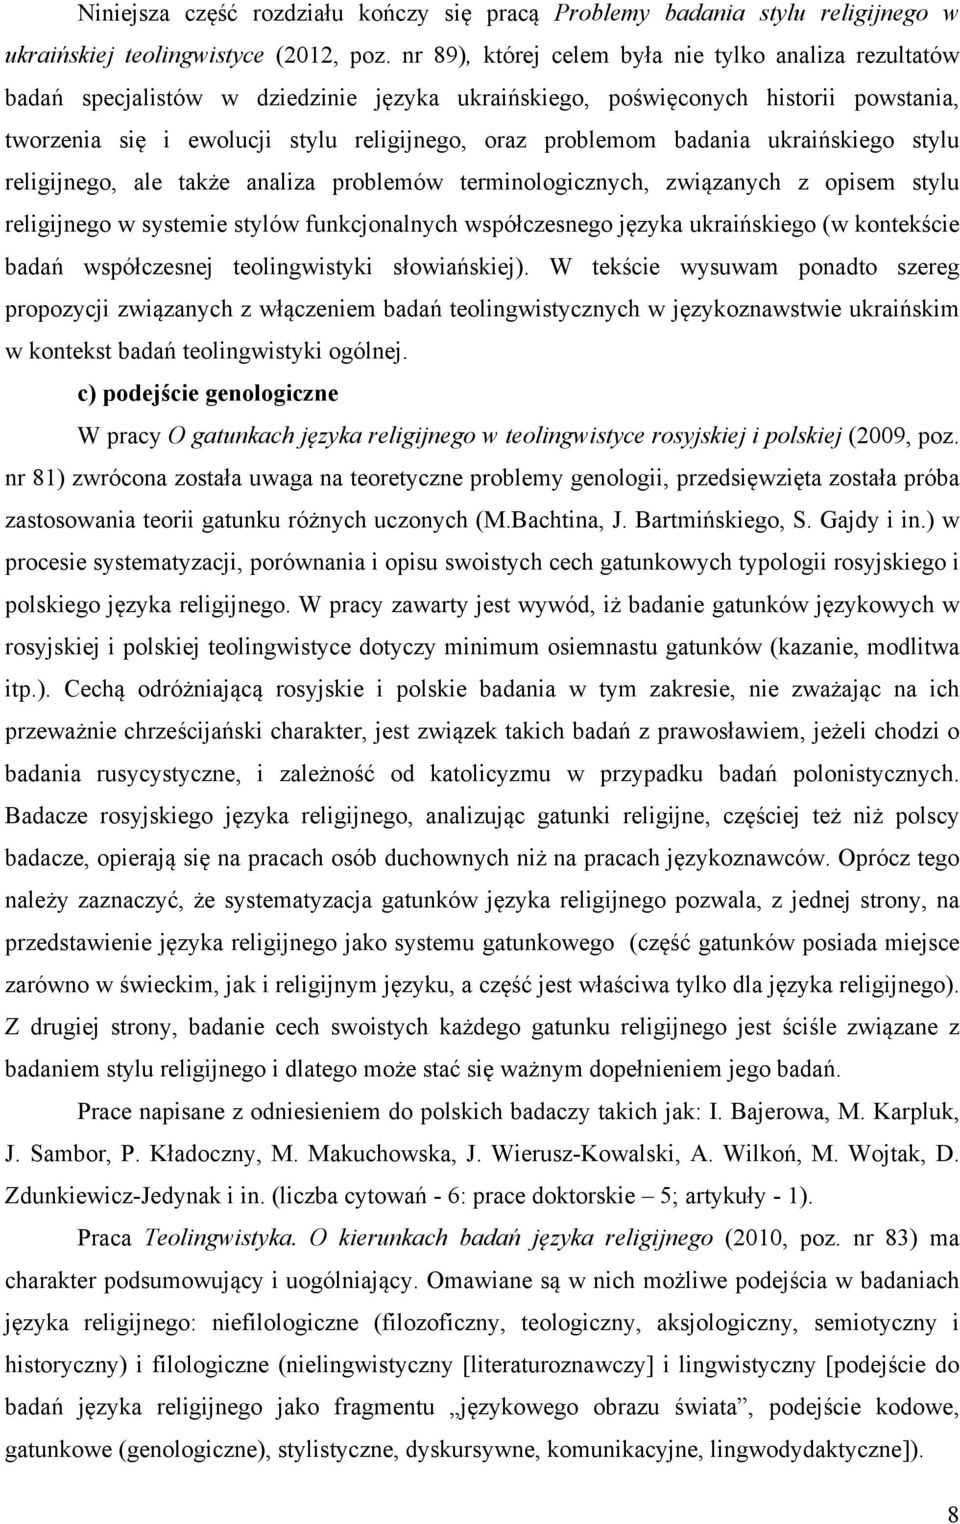 badania ukraińskiego stylu religijnego, ale także analiza problemów terminologicznych, związanych z opisem stylu religijnego w systemie stylów funkcjonalnych współczesnego języka ukraińskiego (w